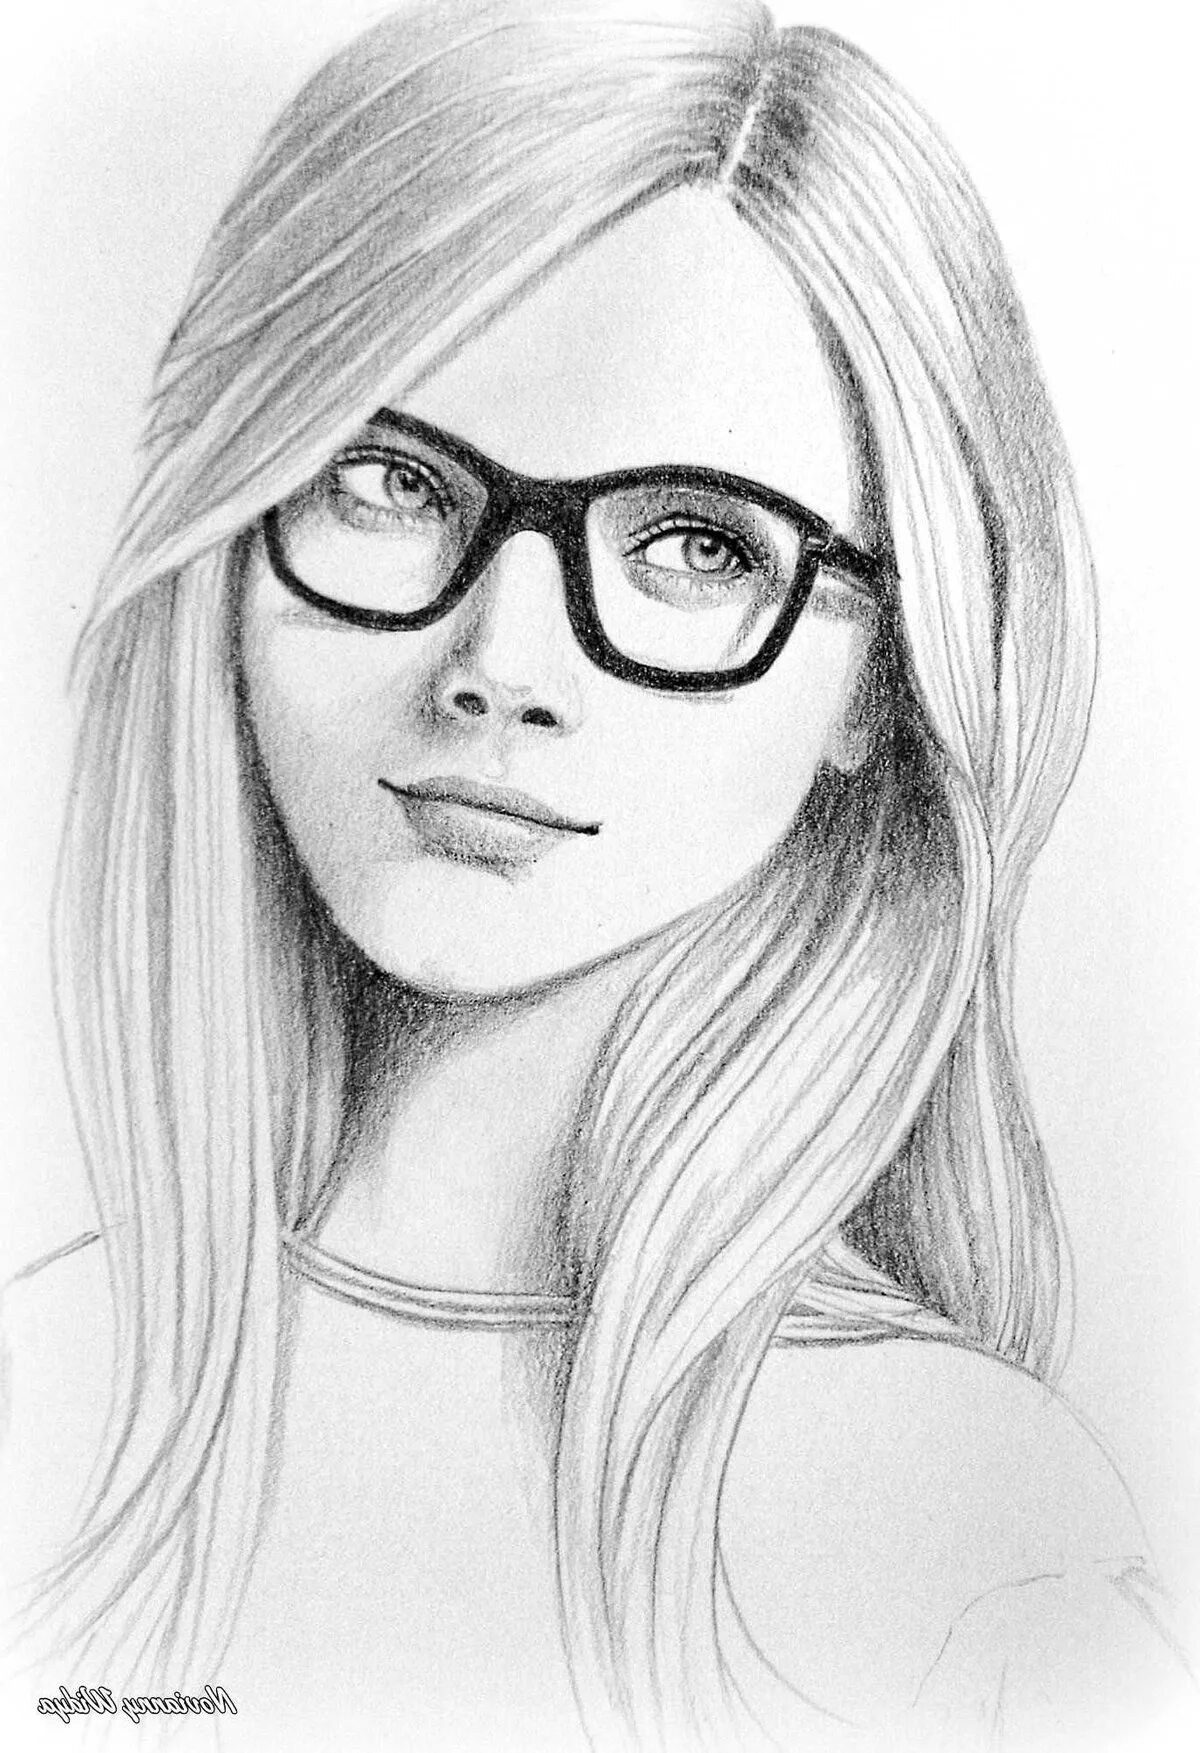 Срисовать картинки. Девушка карандашом. Портрет девушки в очках карандашом. Красивые девушки карандашом. Нарисовать девушку карандашом.